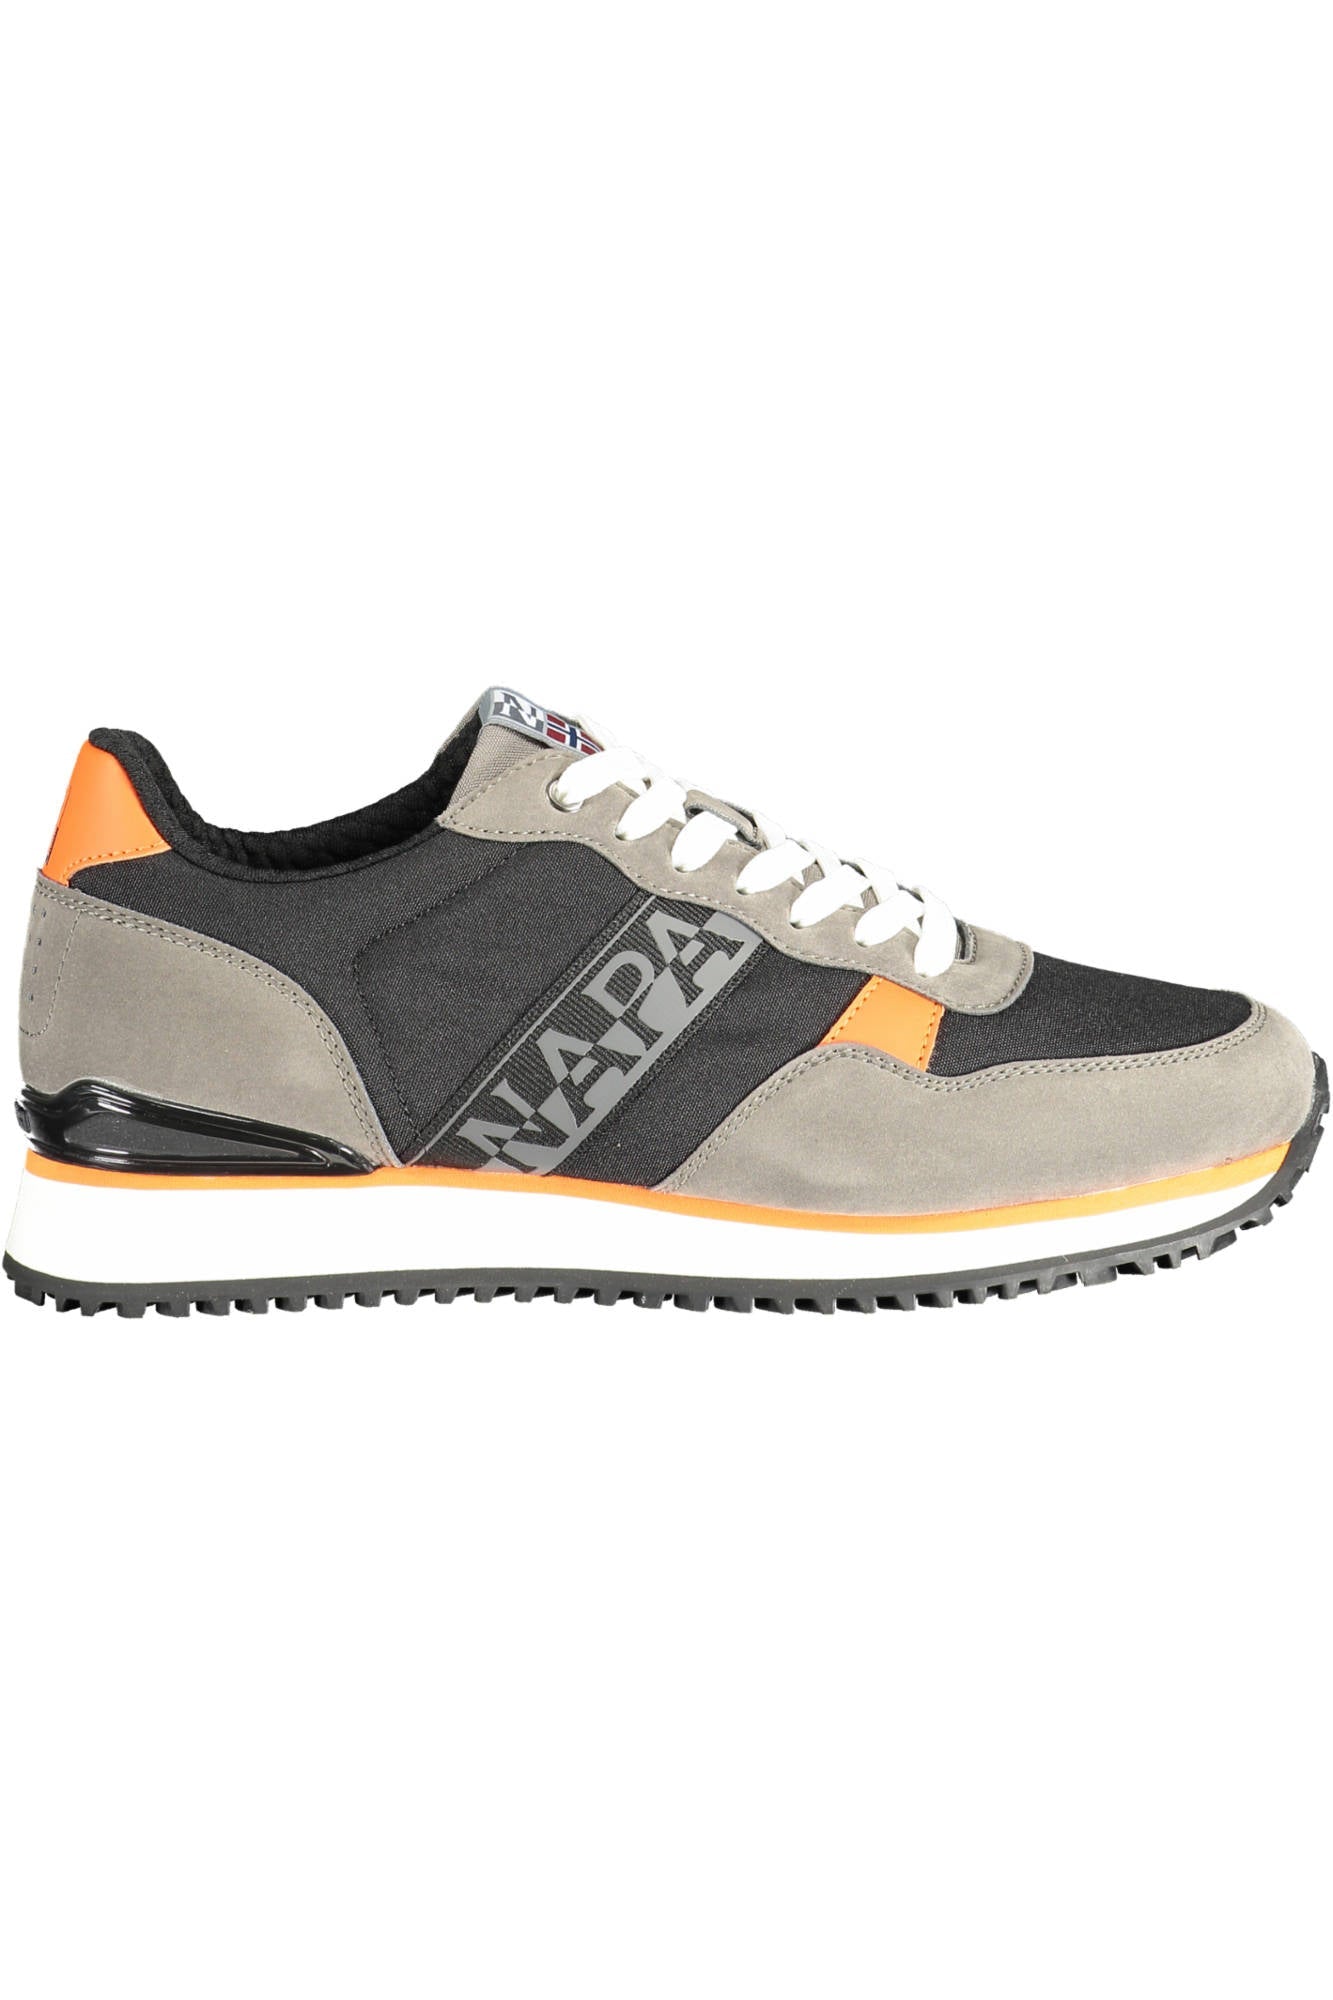 Napapijri Gray Sneakers - Fizigo